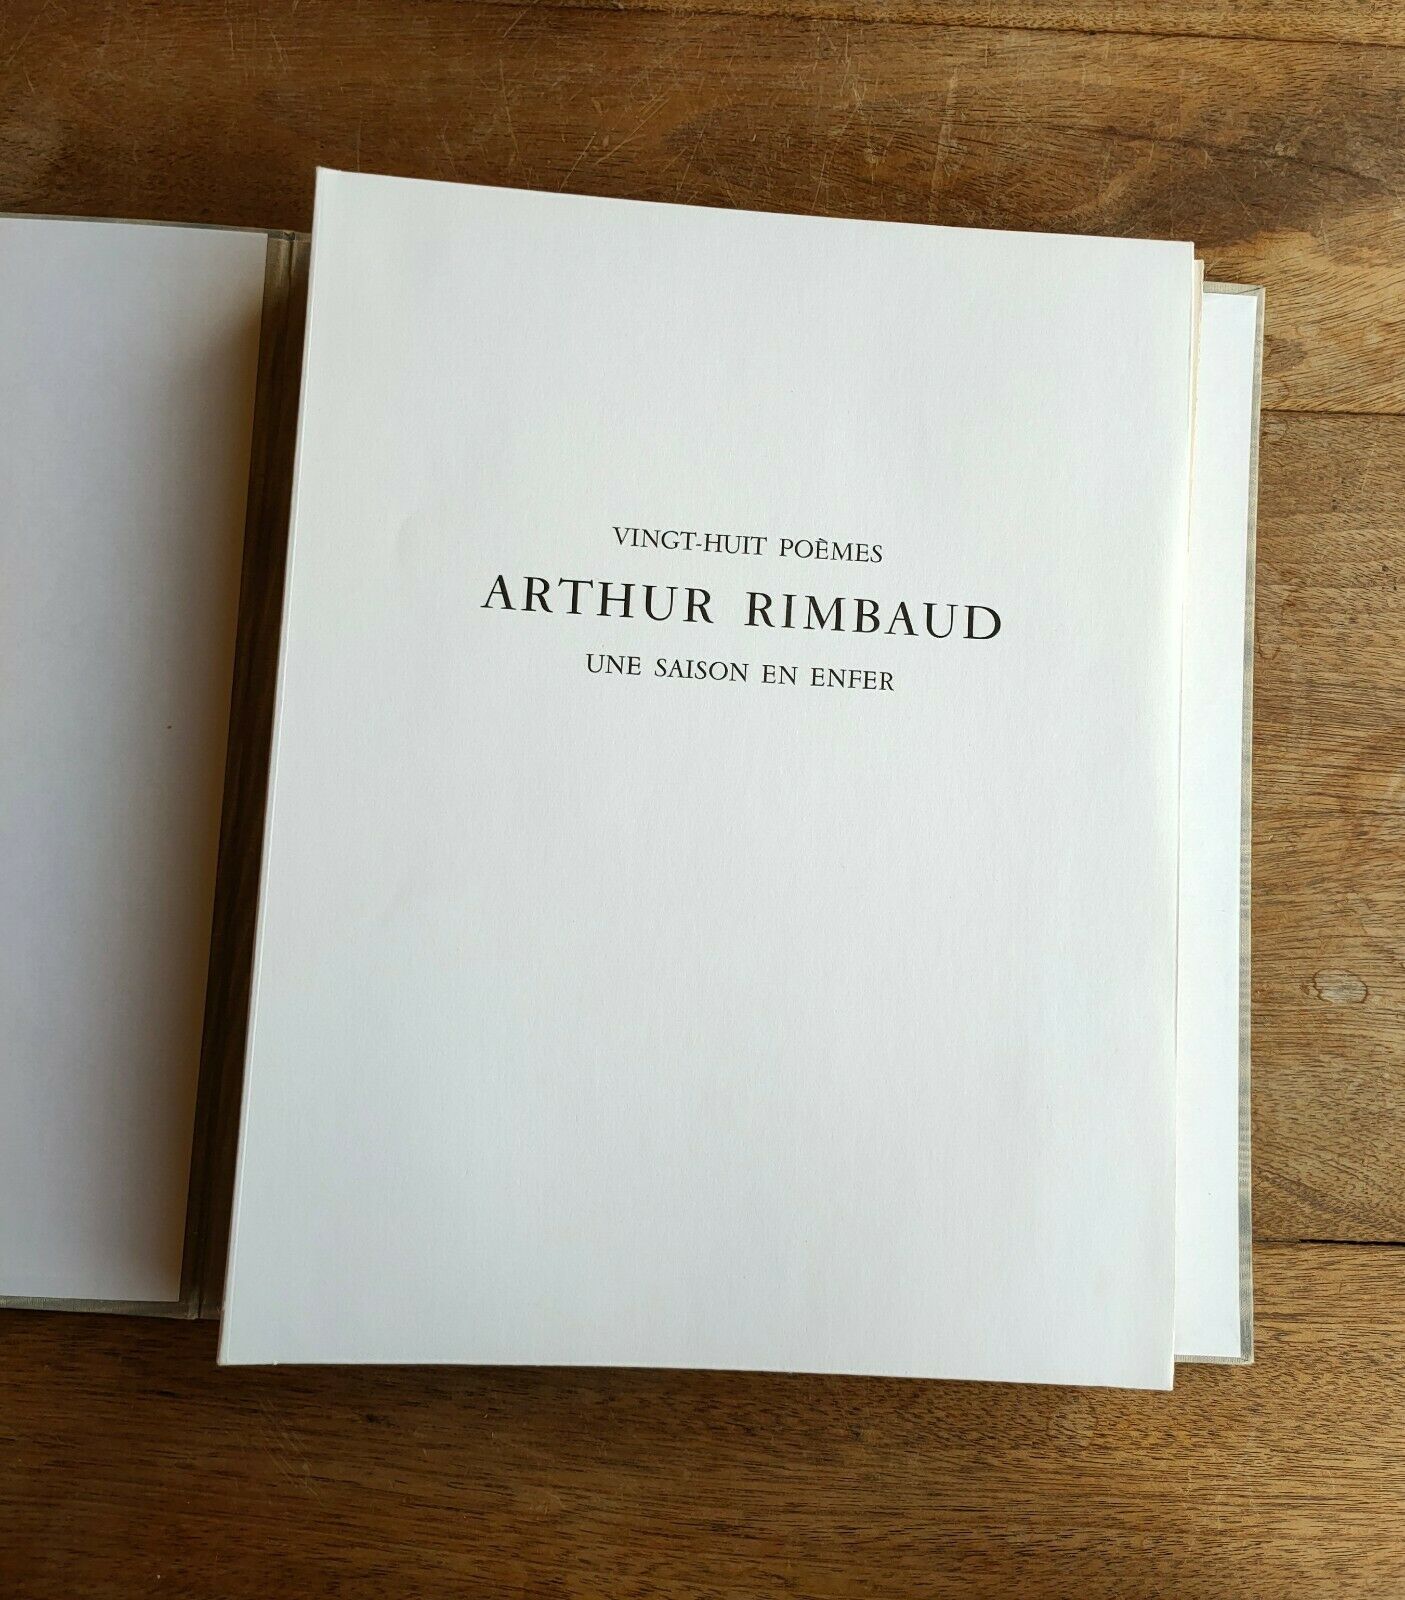 Featured image for “Vingt-Huit Poèmes Une Saison En Enfer Arthur Rimbaud”